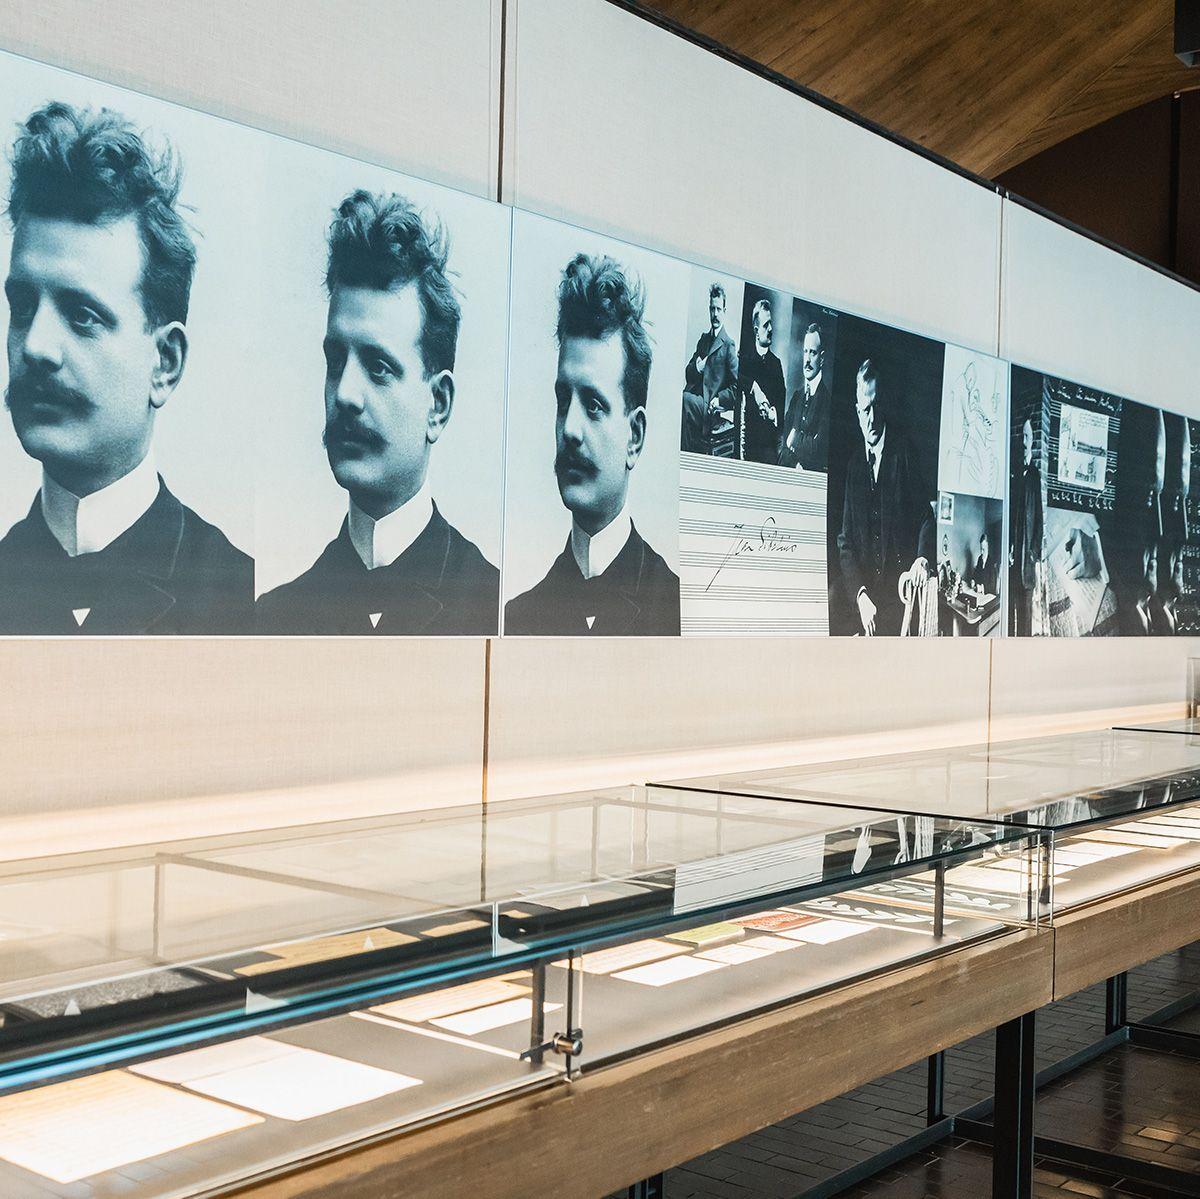 Sibelius-museo esittelee koko suomalaisen musiikkielämän.